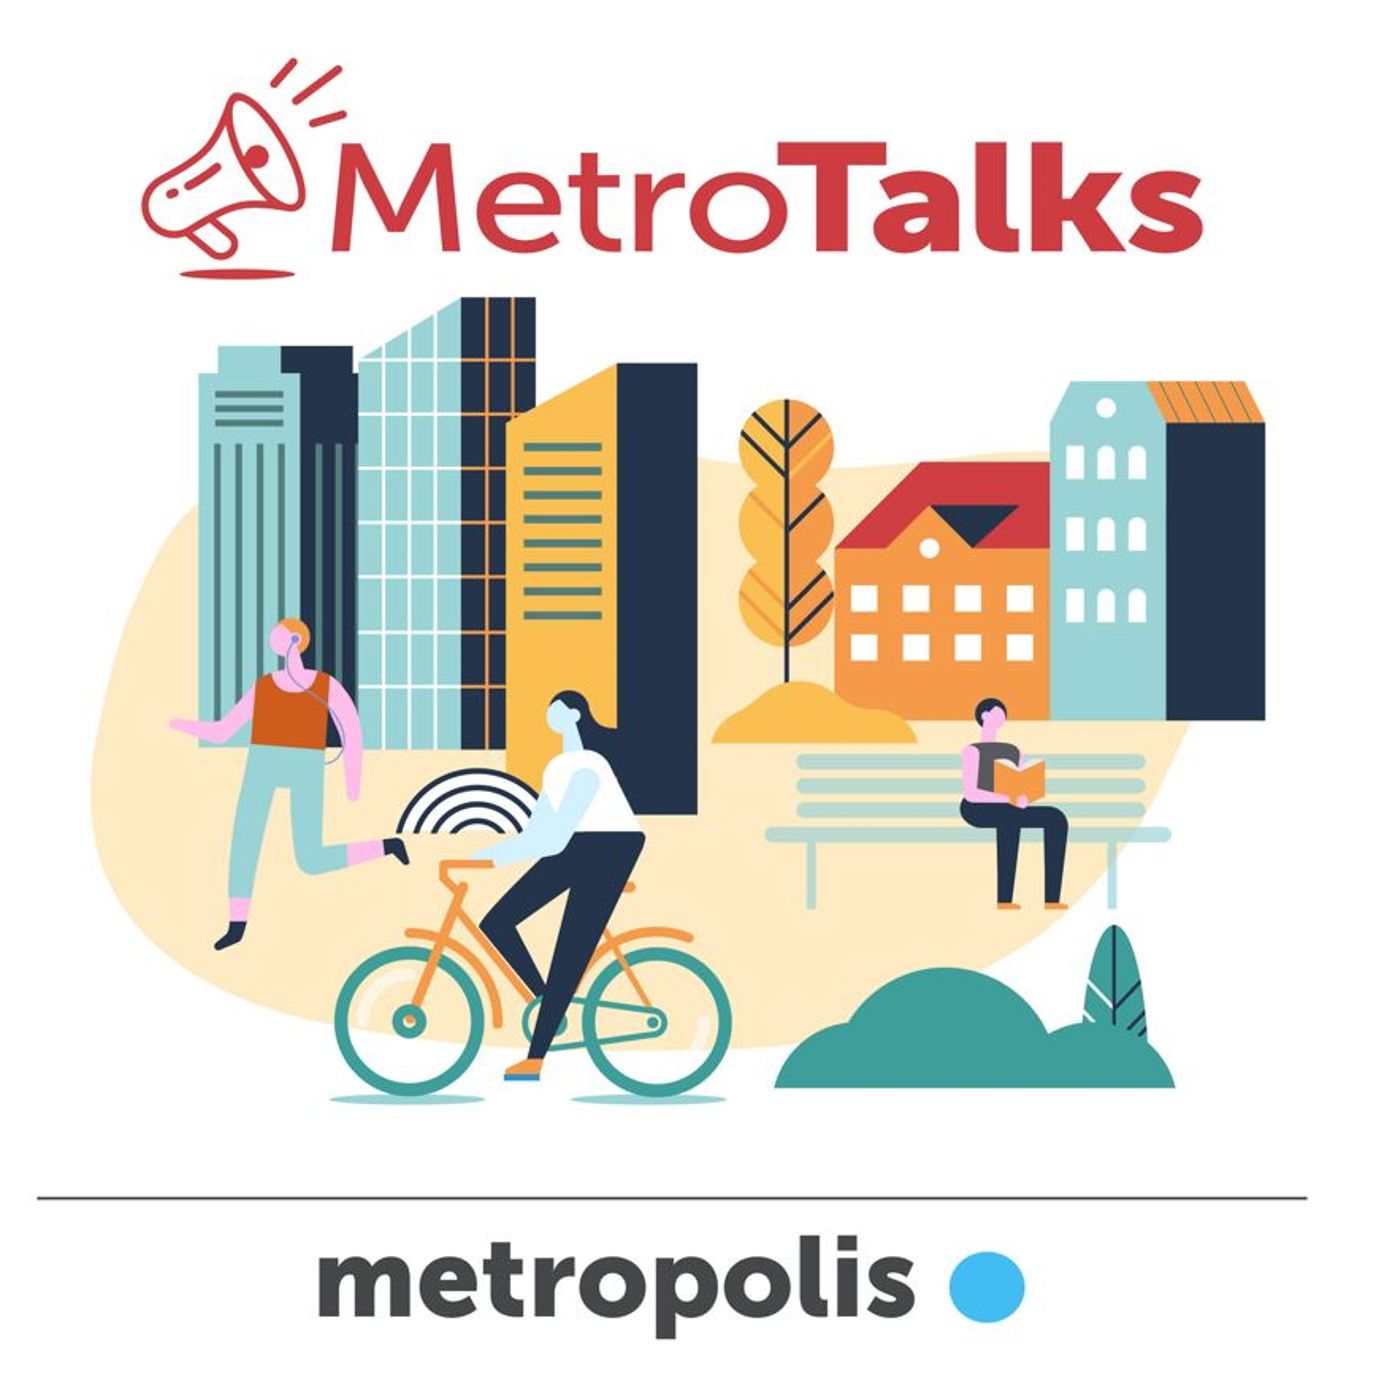 MetroTalks: Rethinking metropolitan spaces